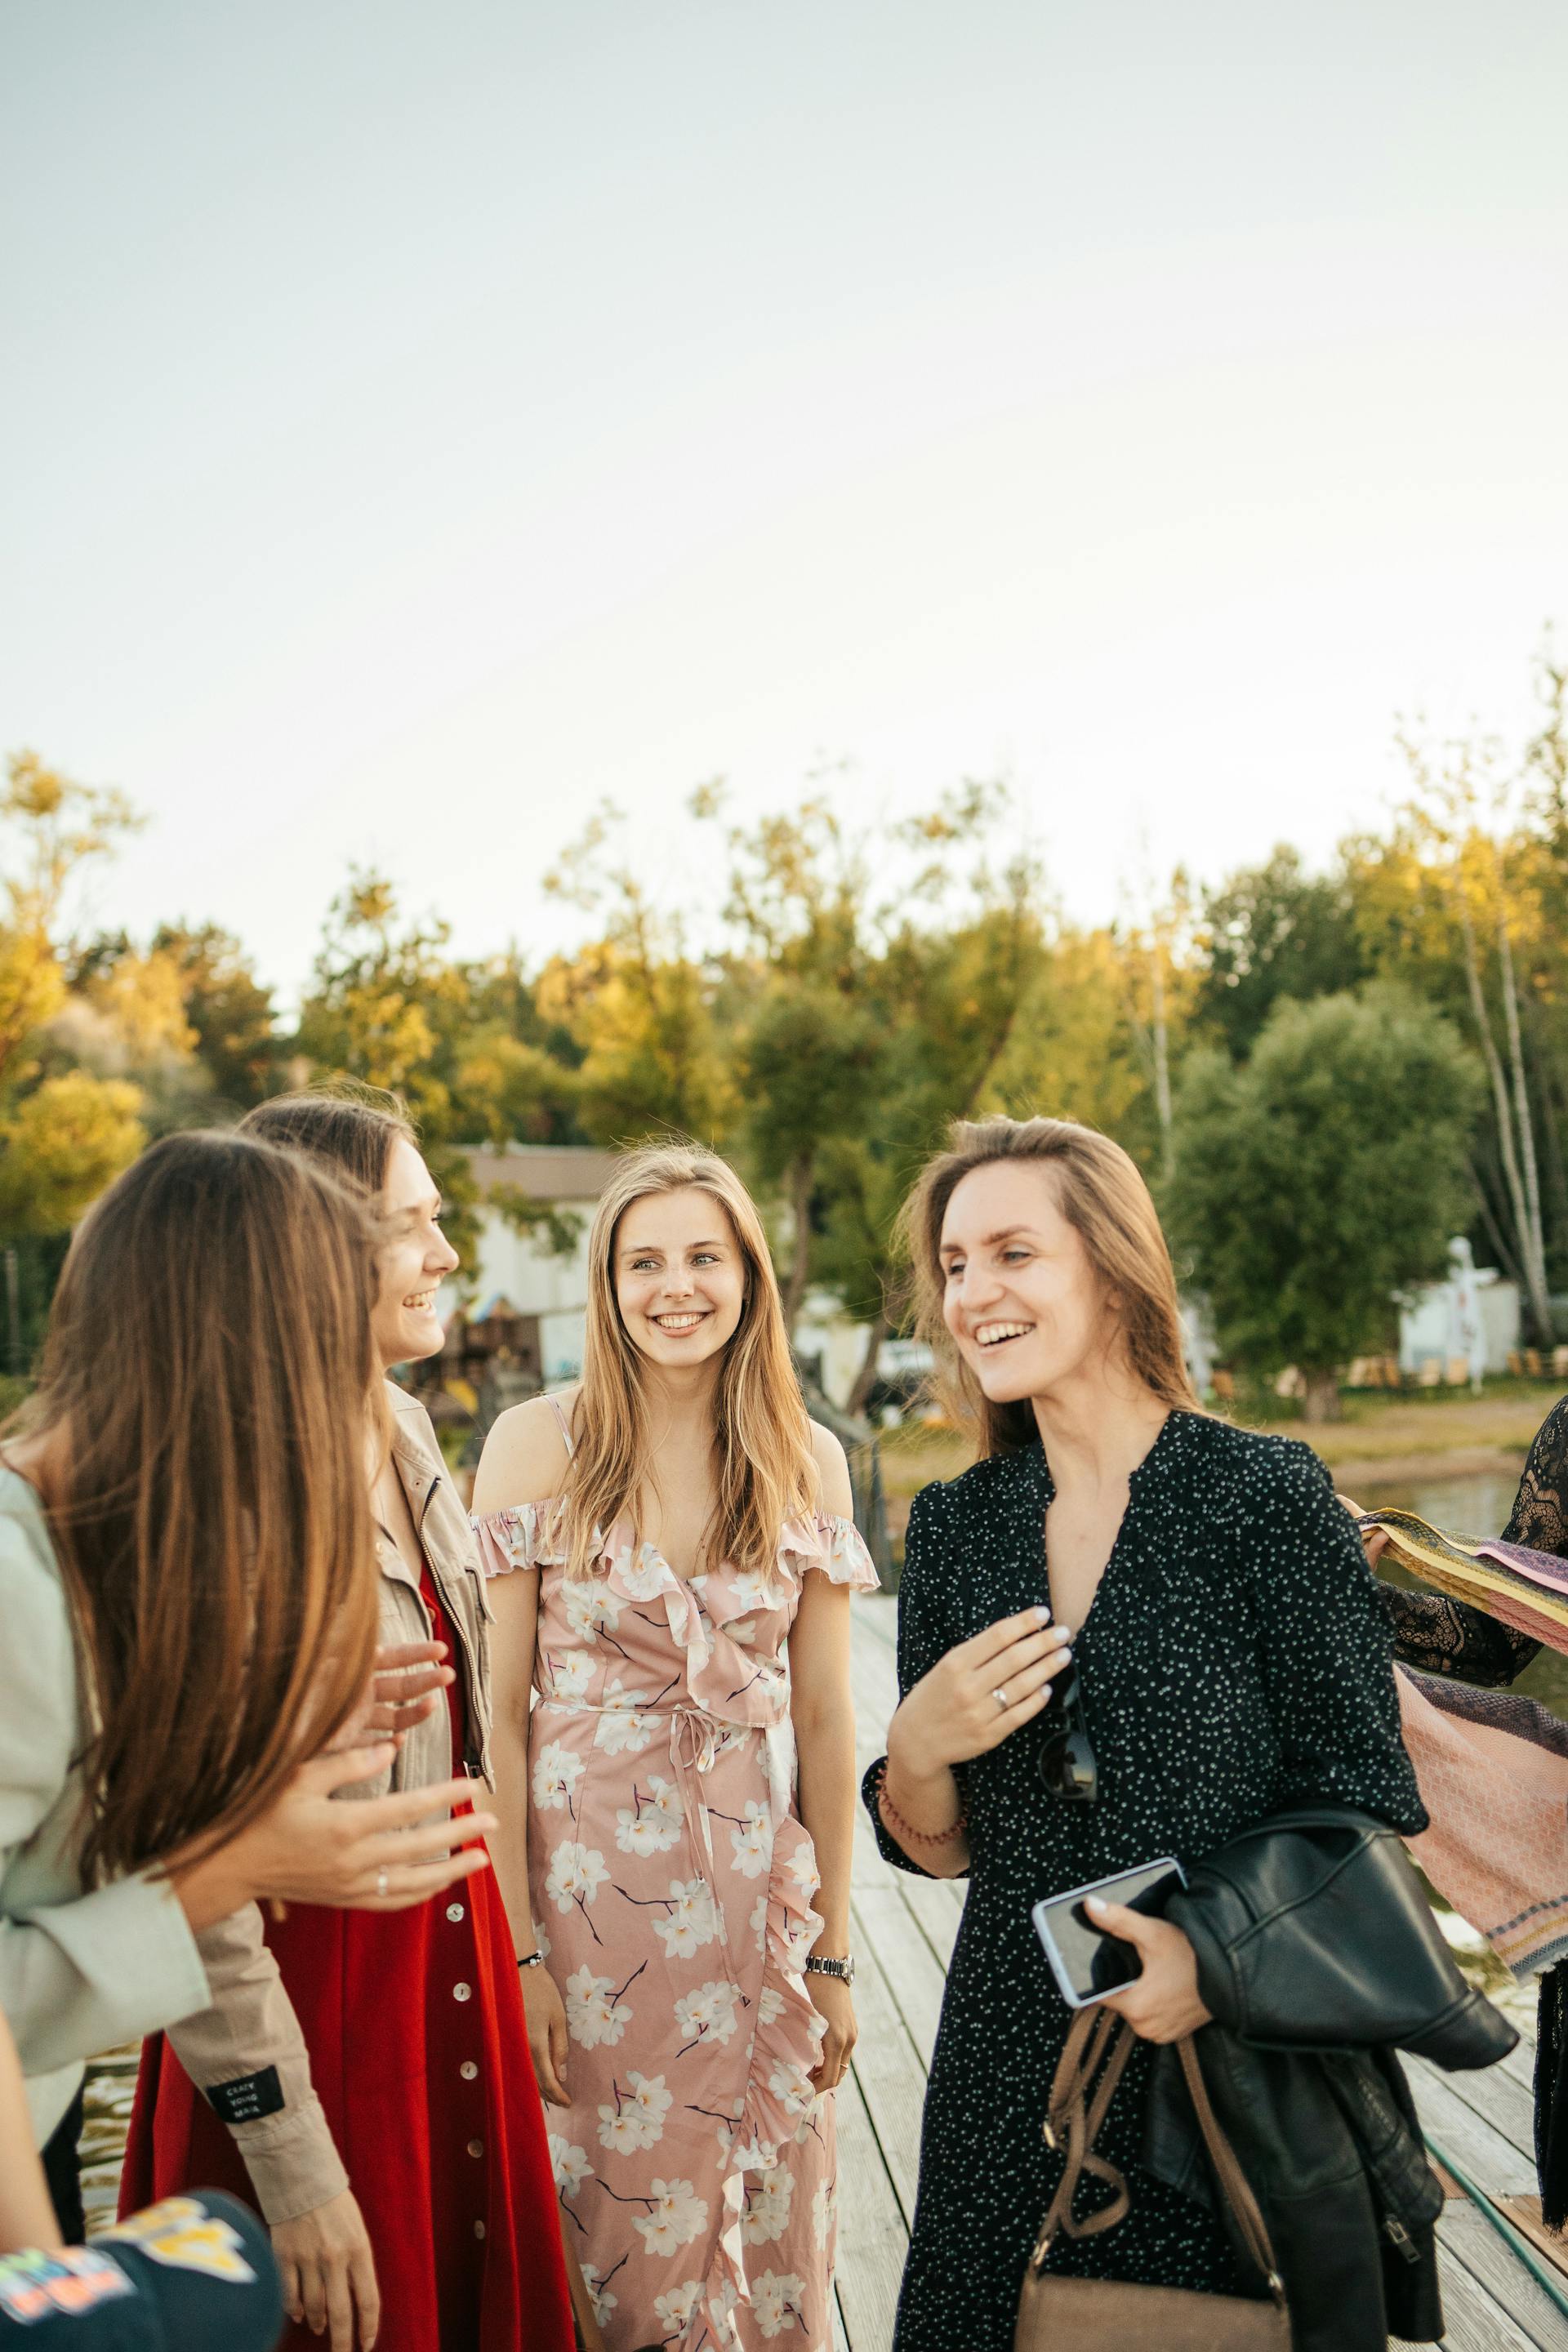 Femmes riant tout en ayant une conversation | Source : Pexels